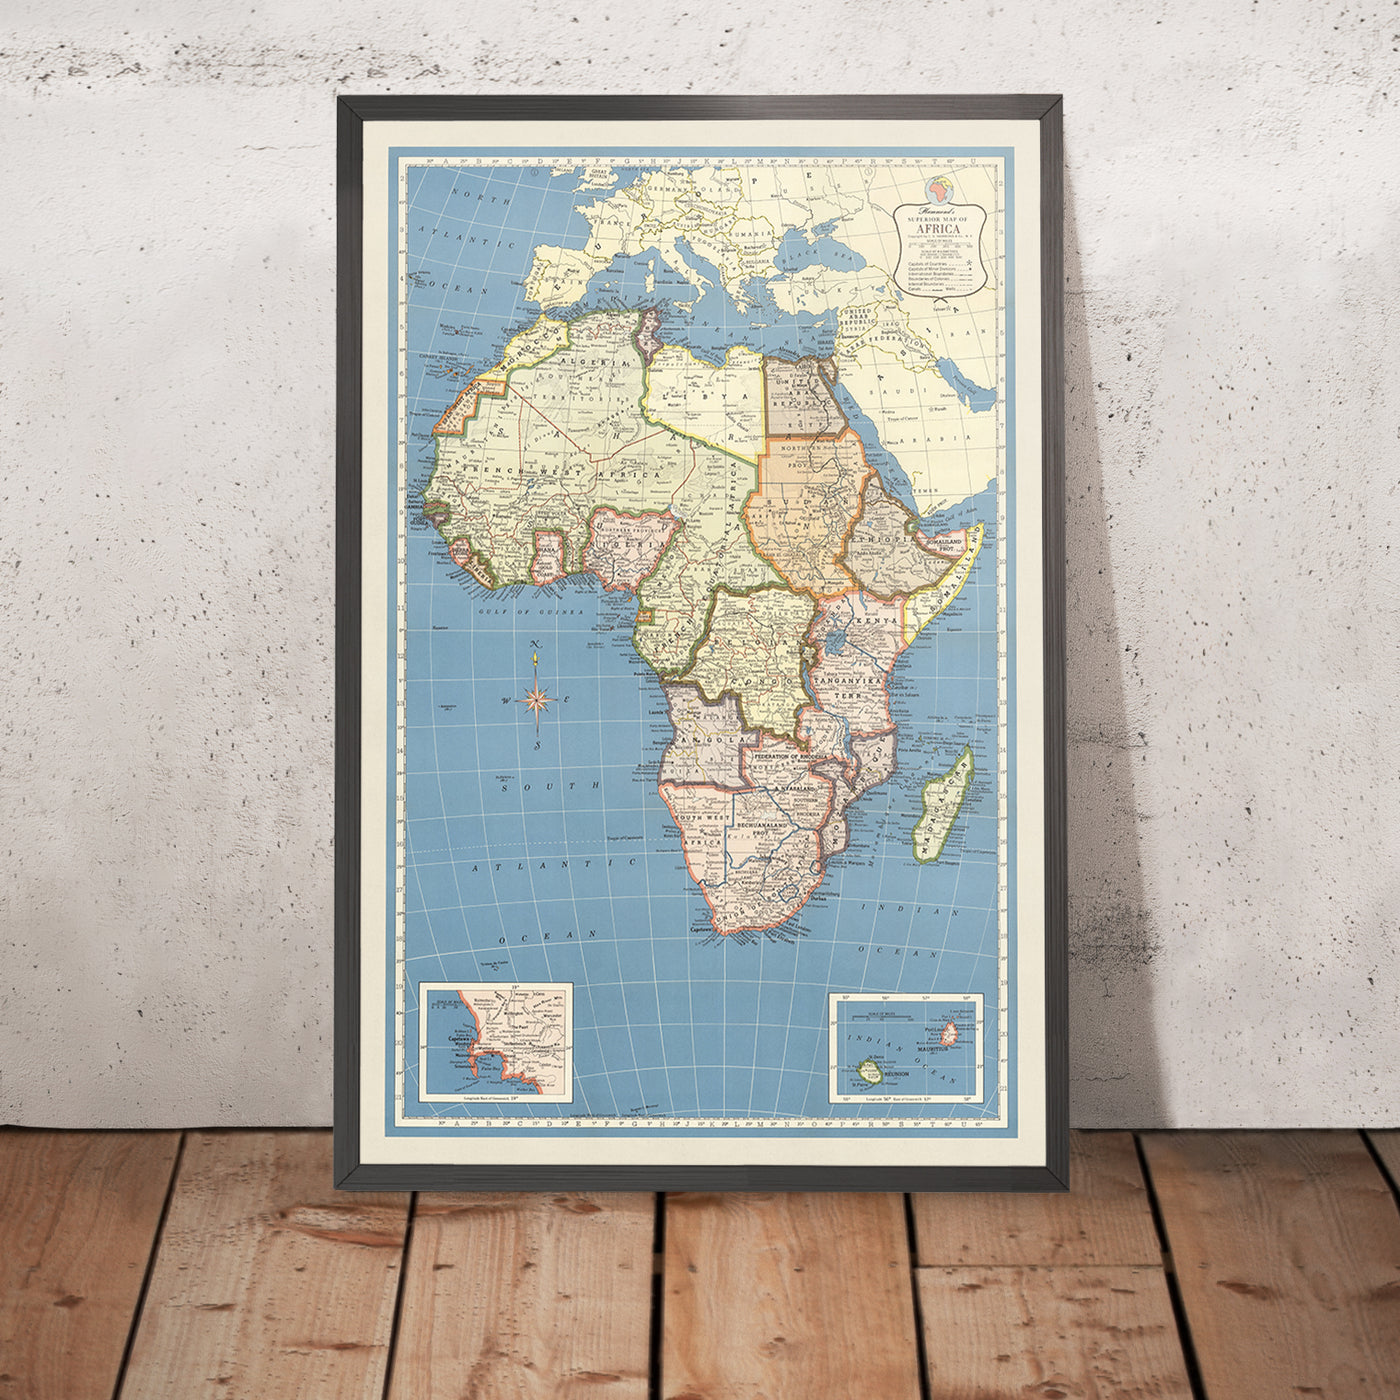 Alte Karte von Afrika, 1957: Kolonialgrenzen, Mercator-Projektion, detaillierte Geographie